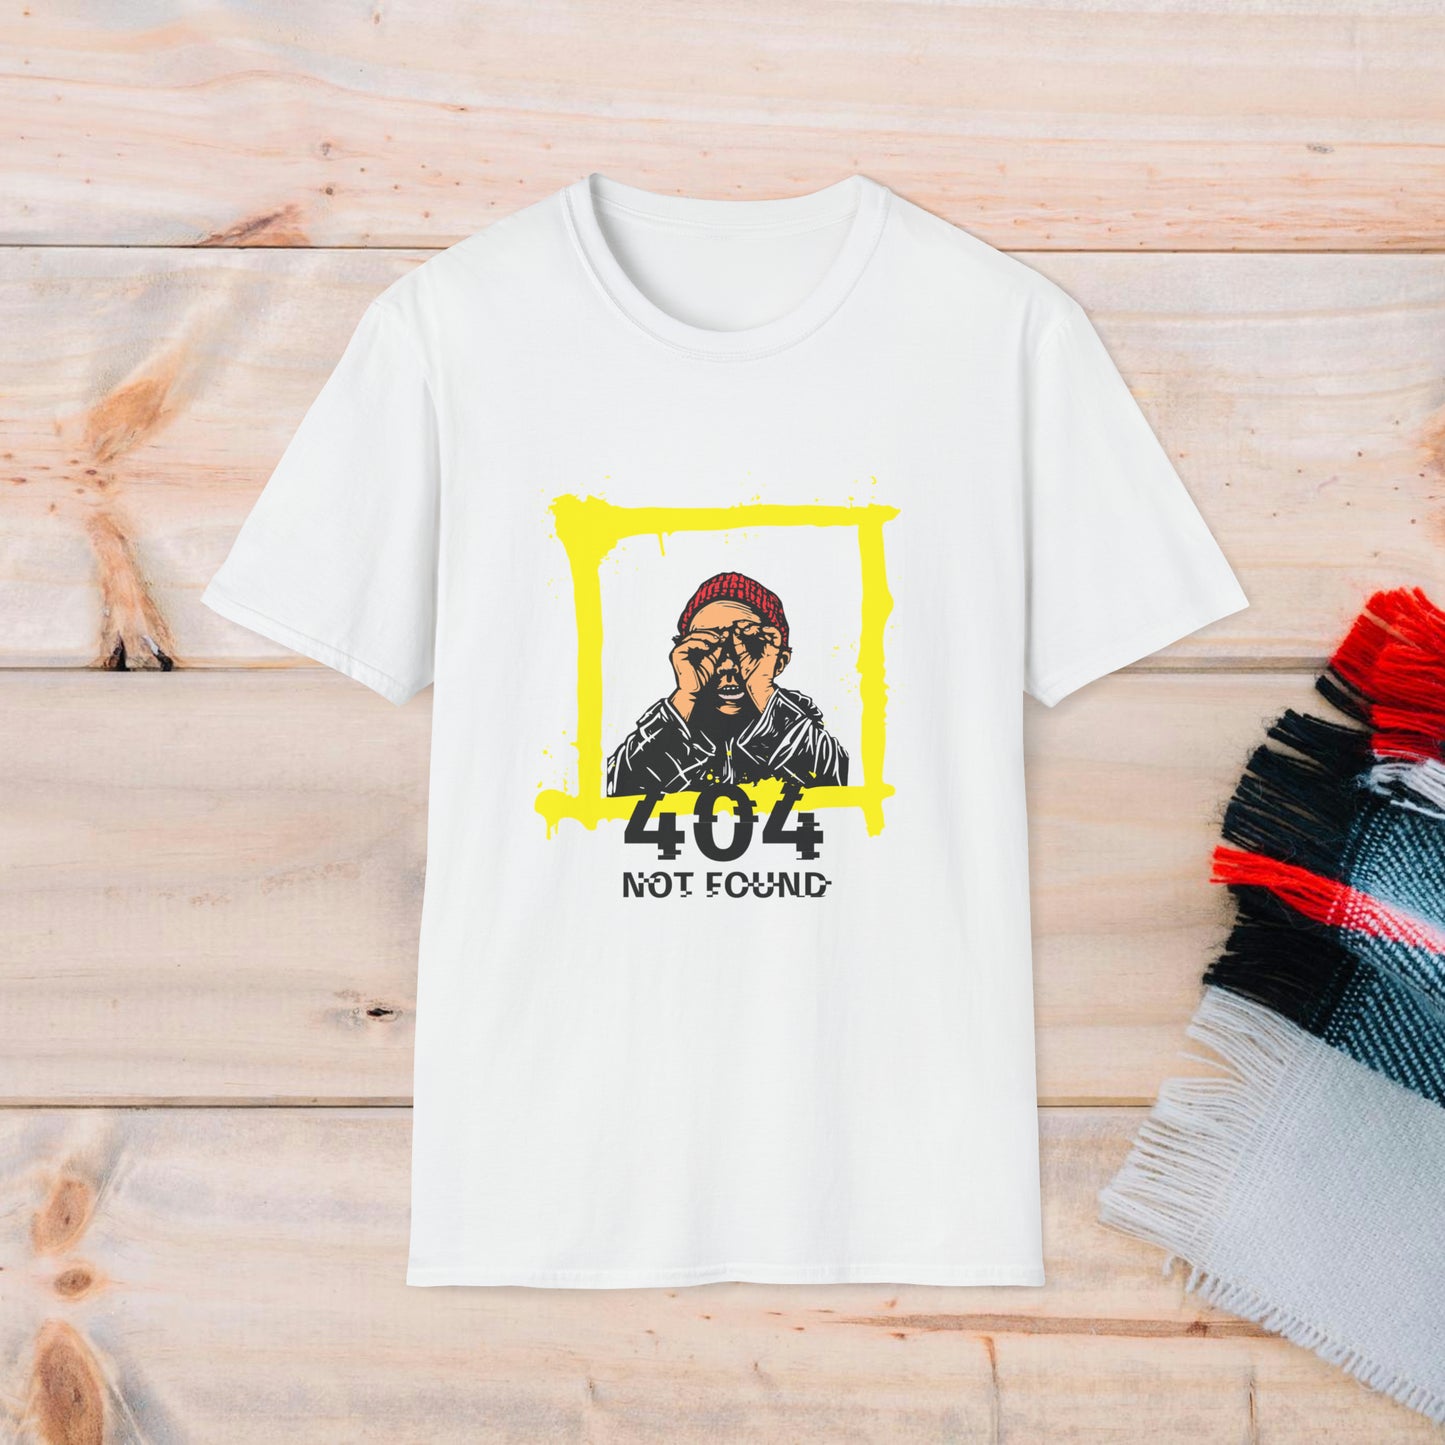 ERROR 404 | T-shirt